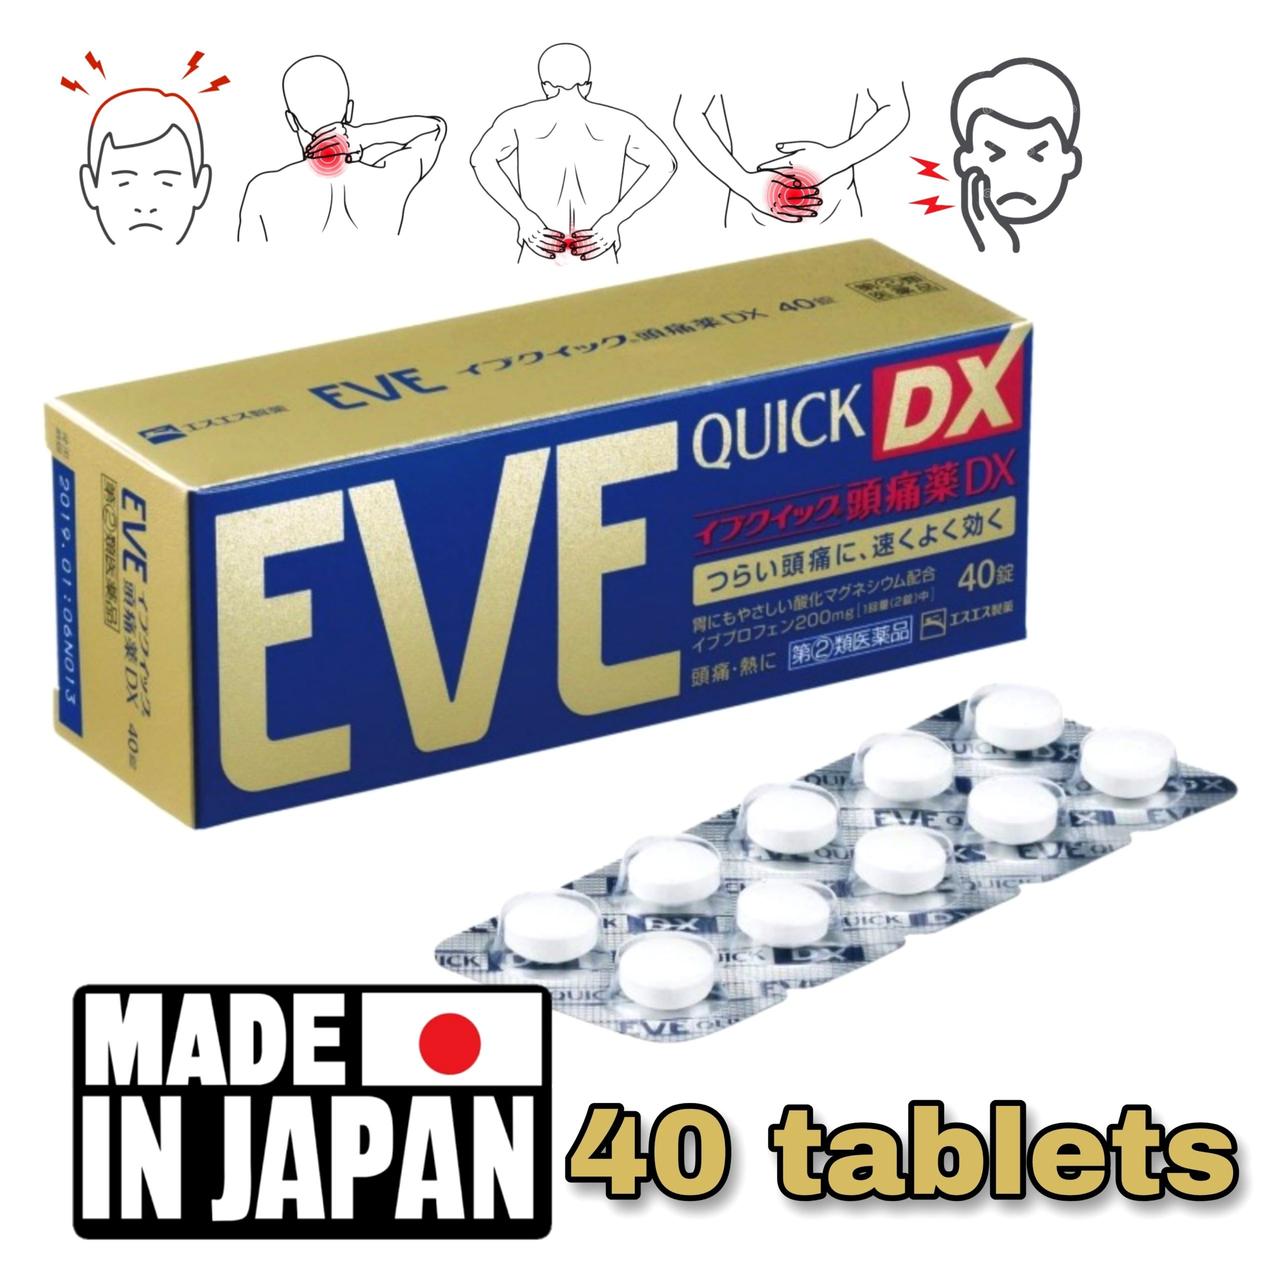 Таблетки обезболивающие EVE QUICK DX быстродействующие от всех видов боли, 40 таблеток. Япония